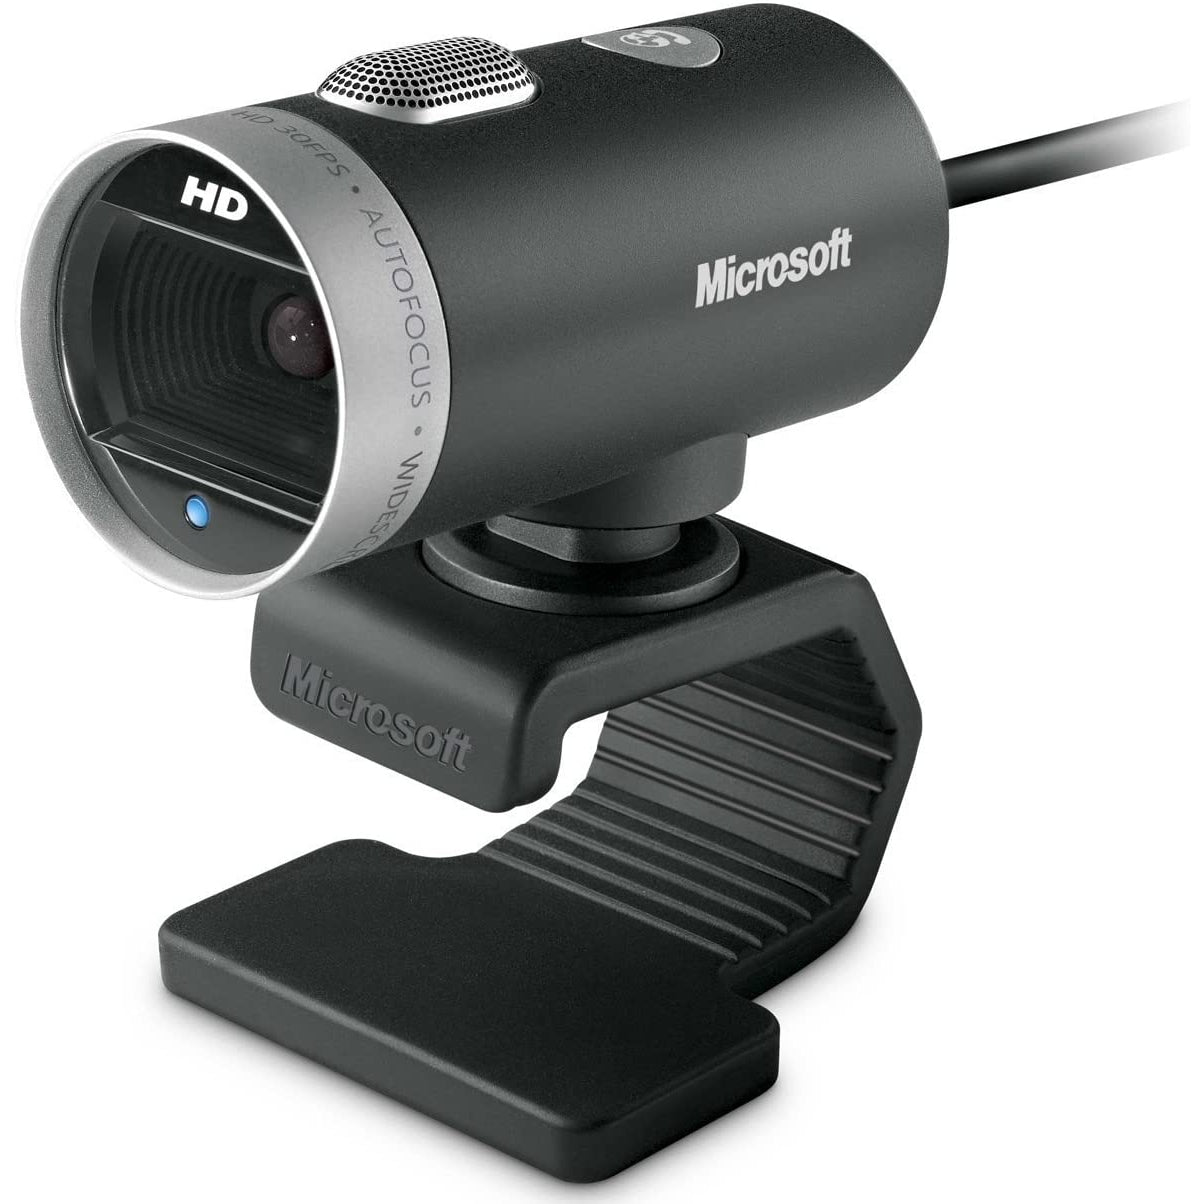 Microsoft LifeCam Cinema Webcam - Black / Silver